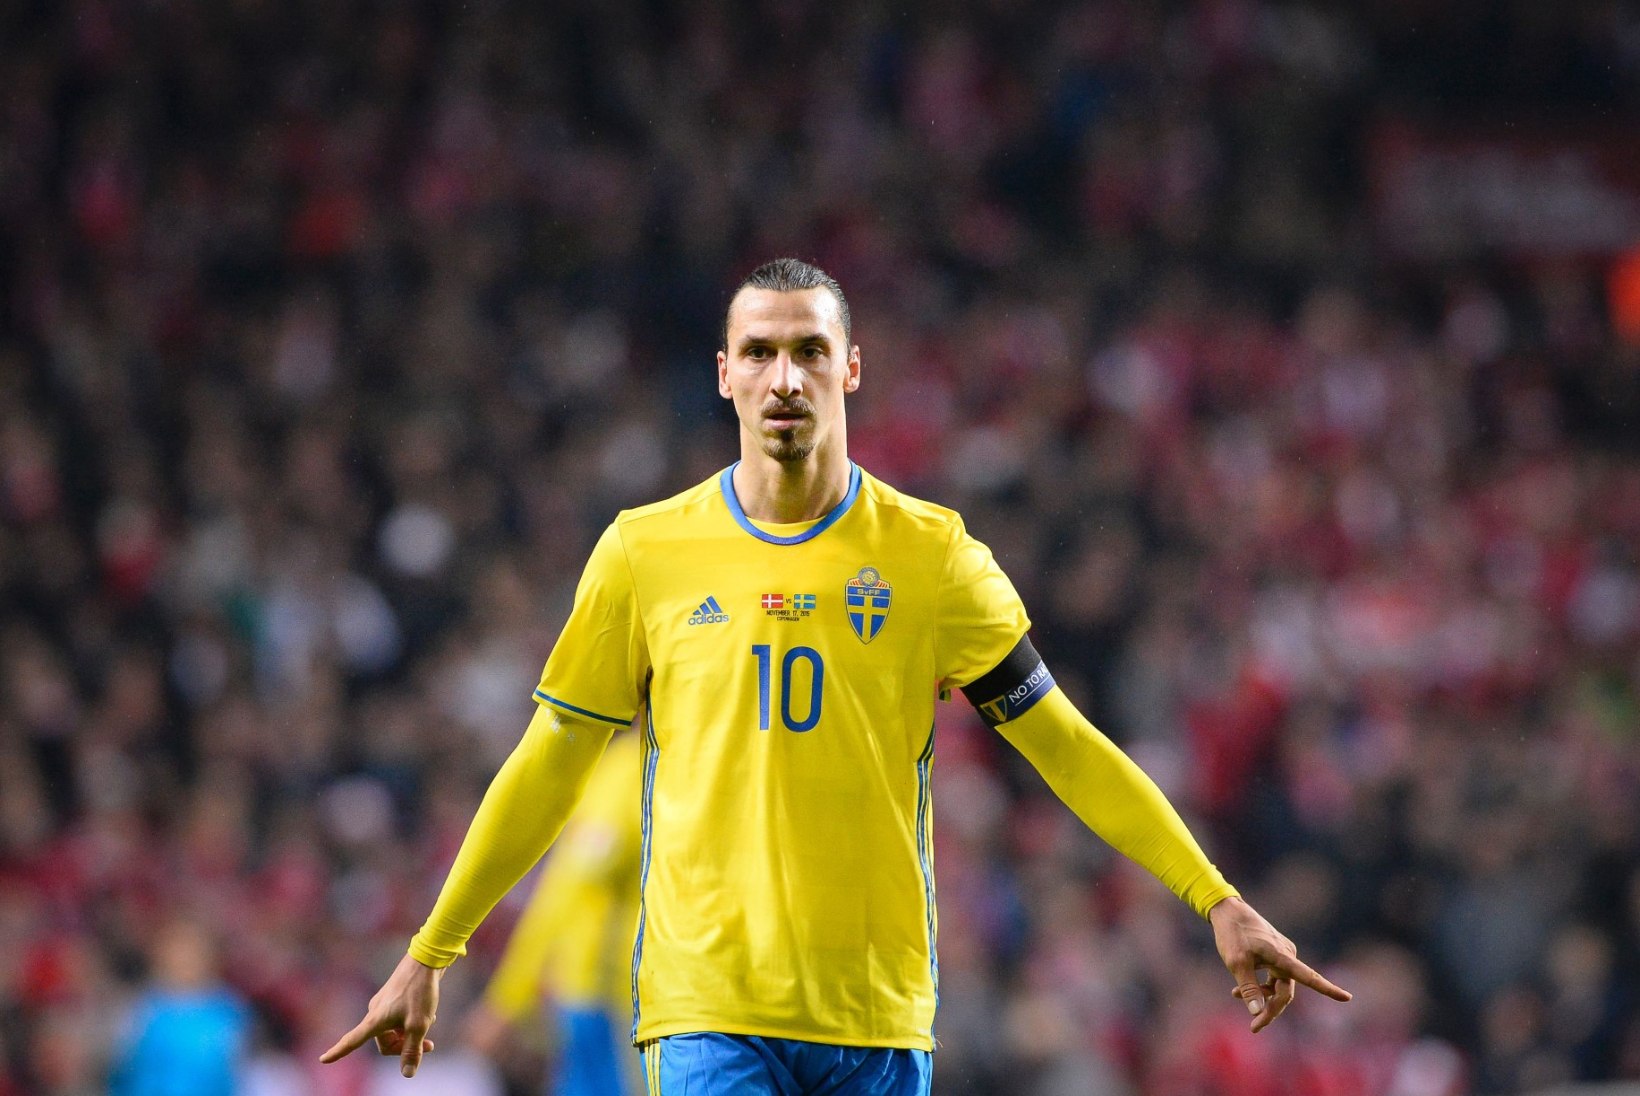 MM MUUSIKAS | F-alagrupp: Lõuna-Korea kõige kiirem naisräppar ning lugu, mida rootslased tahaks Zlatanile eesti keeles laulda